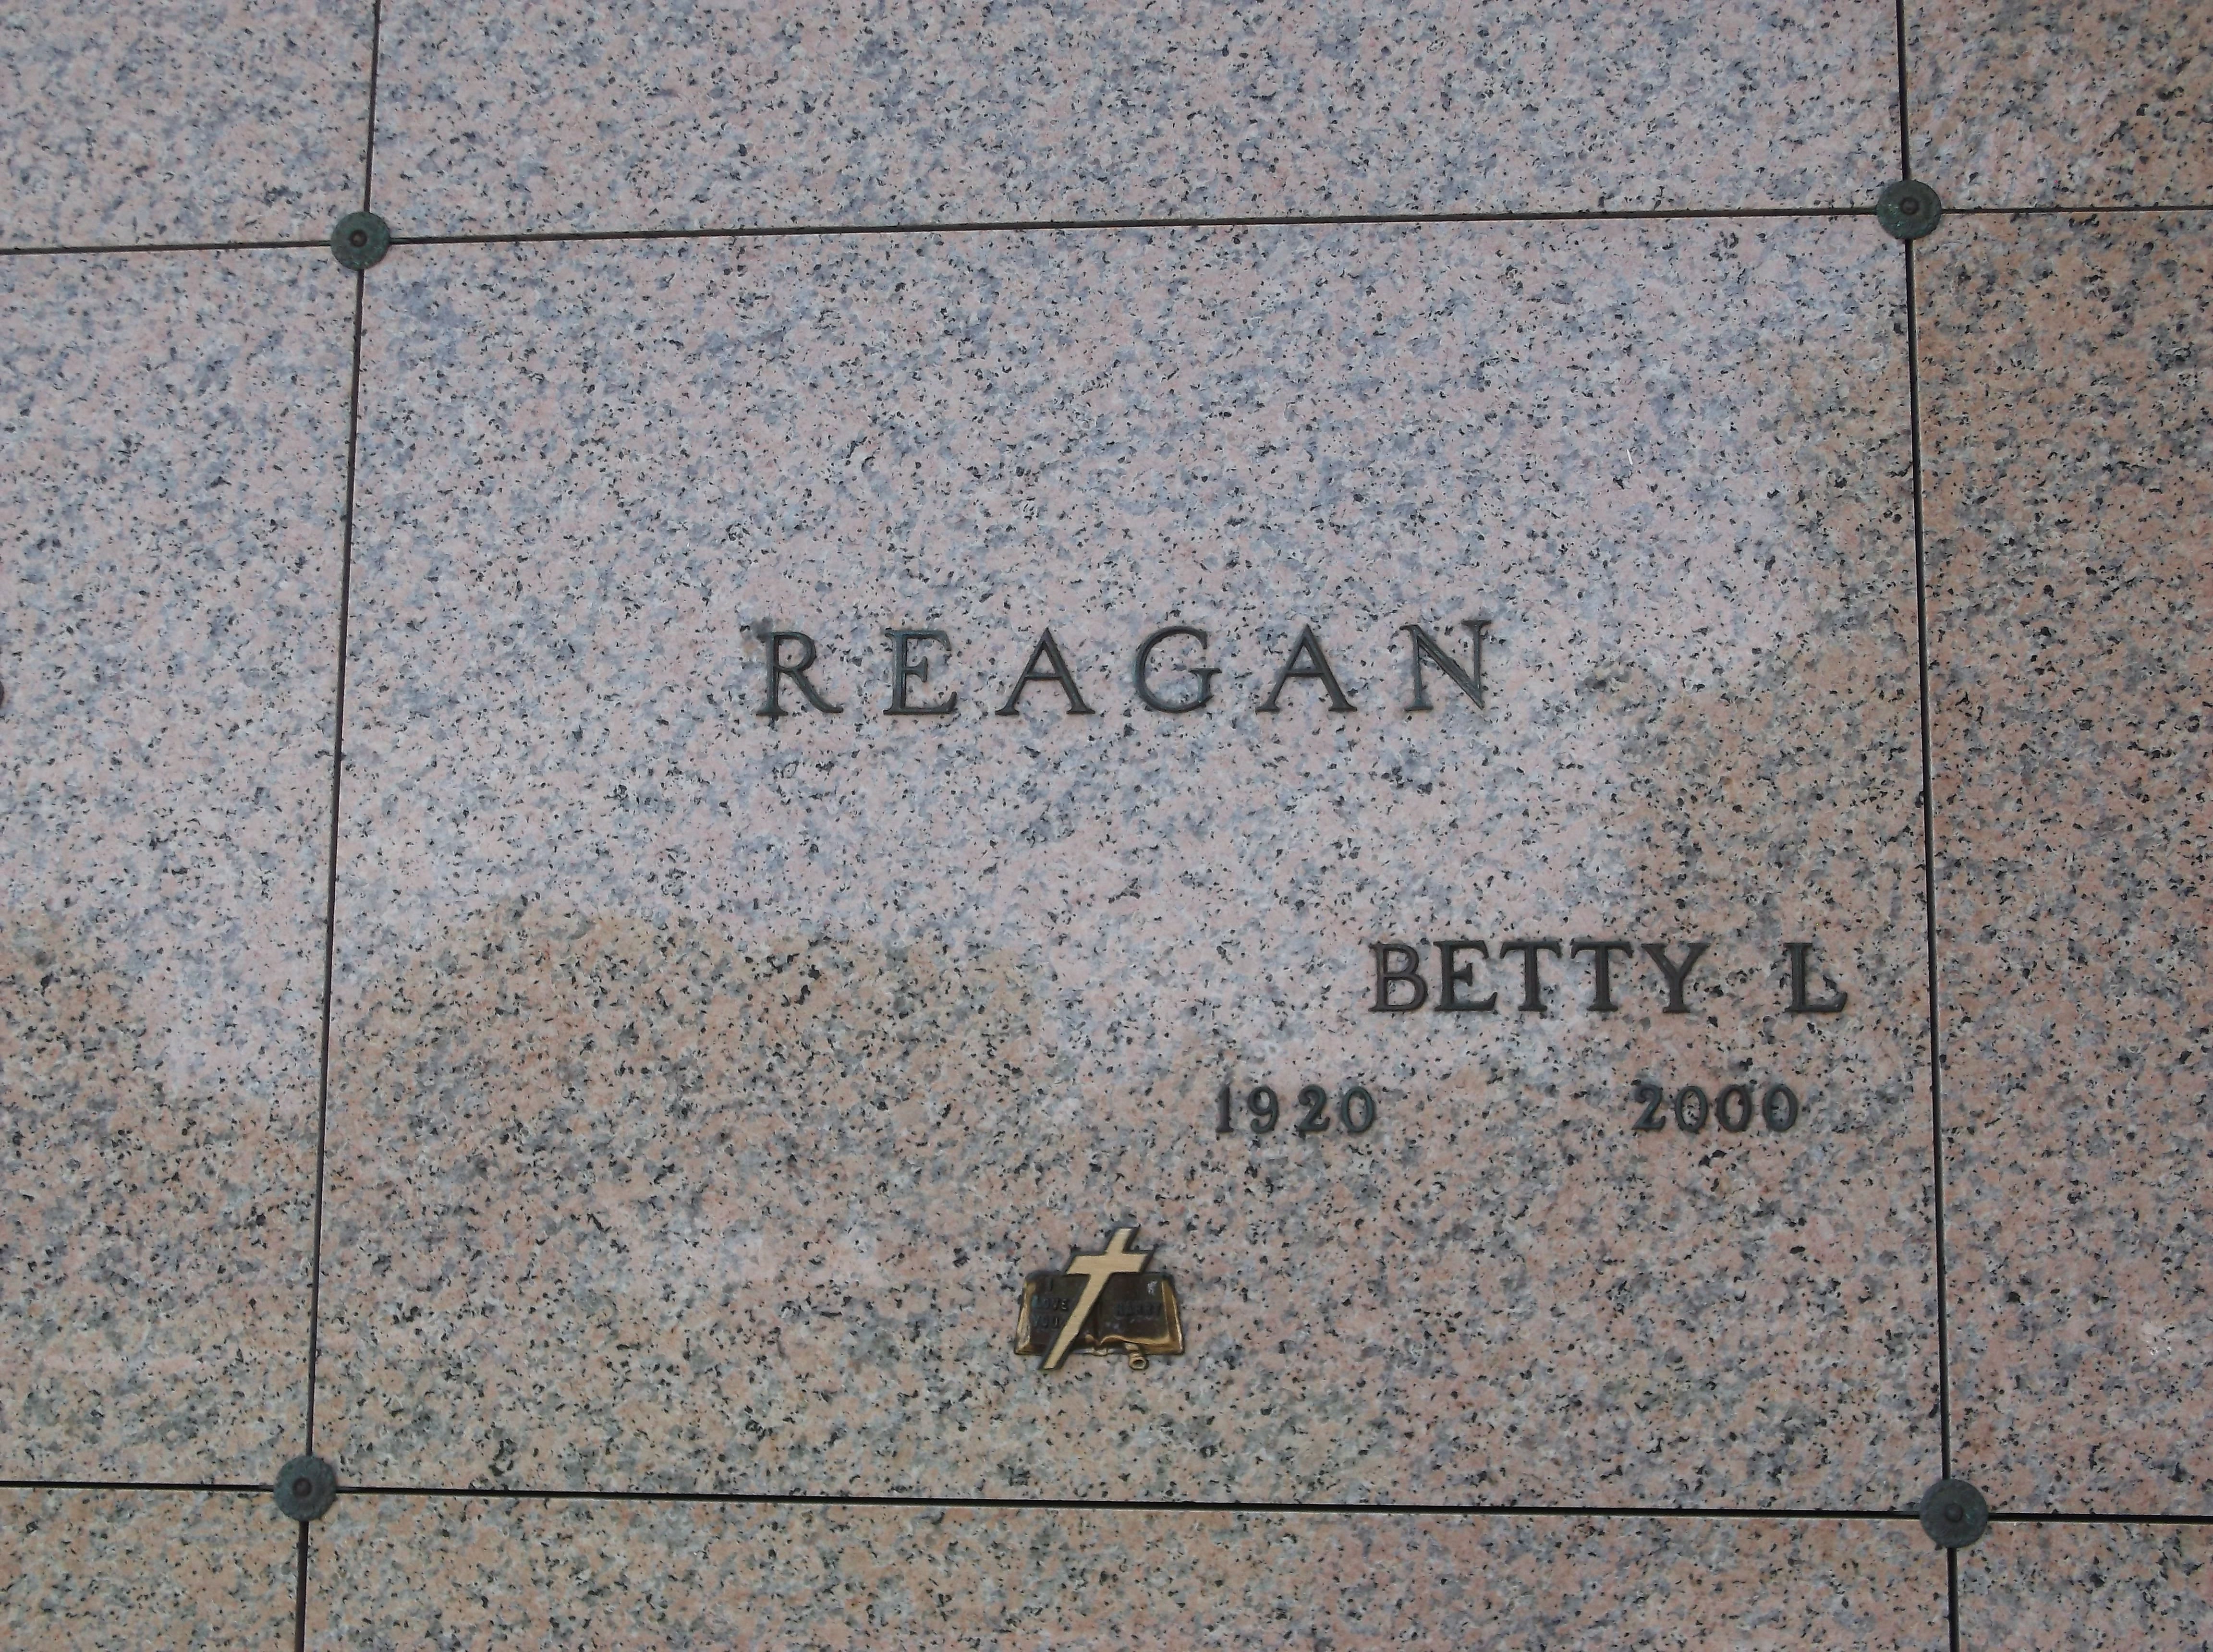 Betty L Reagan